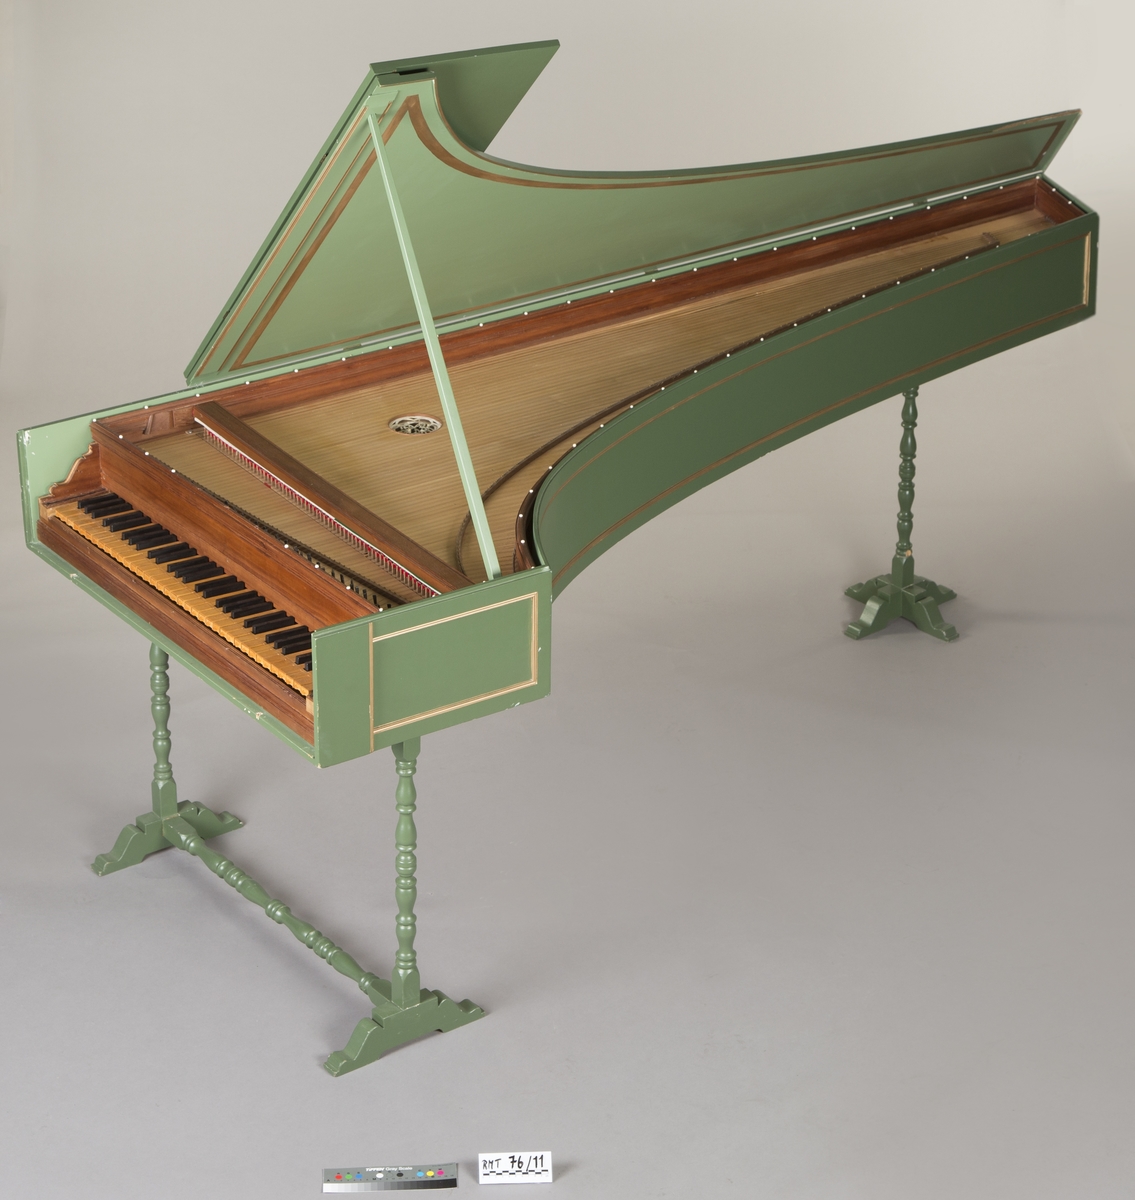 Klaverinstrument i italiensk stil med omfang FF–g4 og 2 x 8' registre. Treslag brukt i instrumentet: Sarg - alerce, Tastbelegg - buksbom, Taster - redwood (muntlig informasjon fra produsent).

Deler som kan tas av: Frontlokk til klaviatur, to benstativ, lokkstøtte.